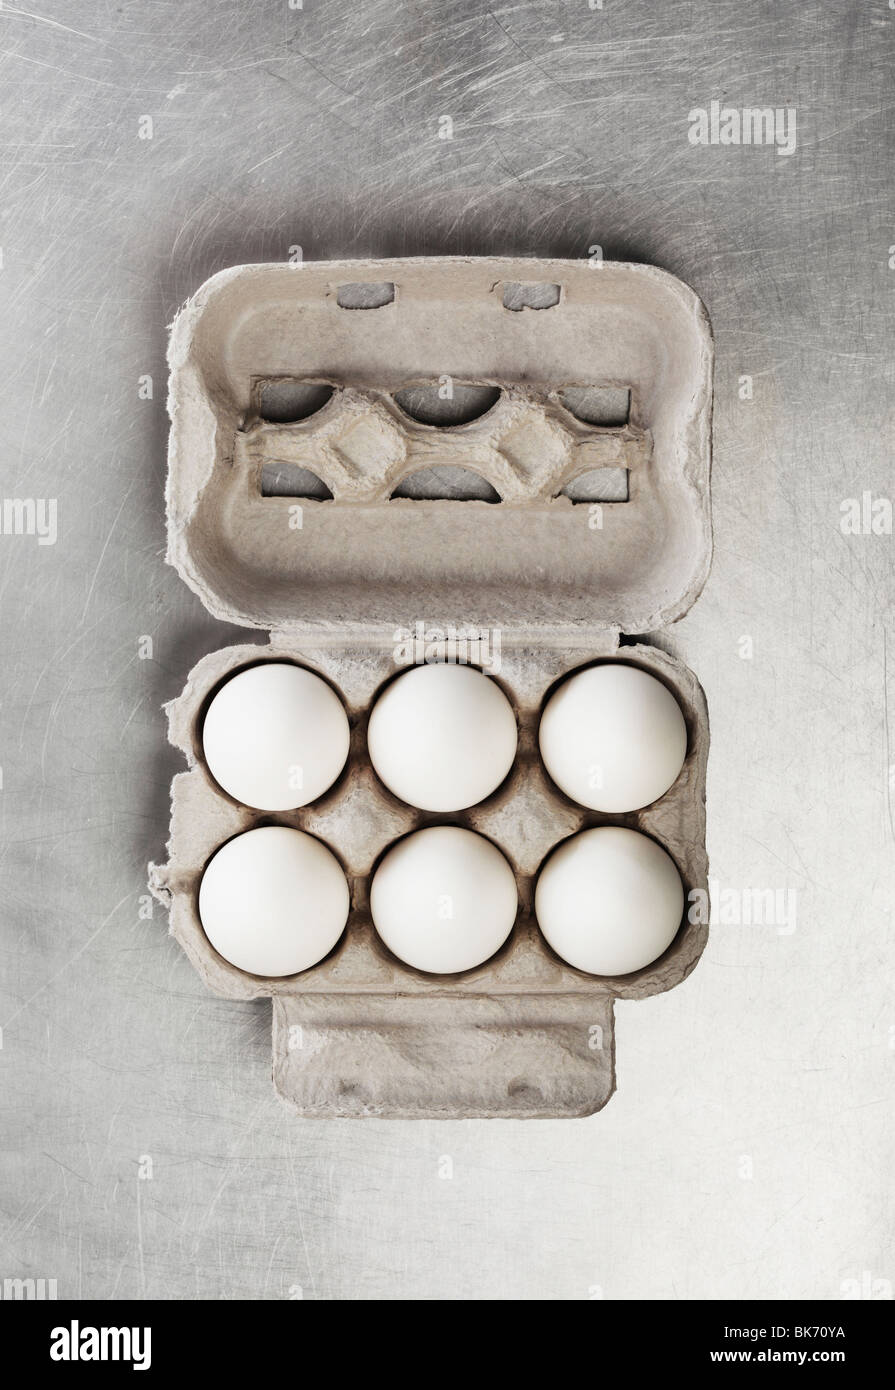 Seis huevos de gallina en una caja de cartón Foto de stock